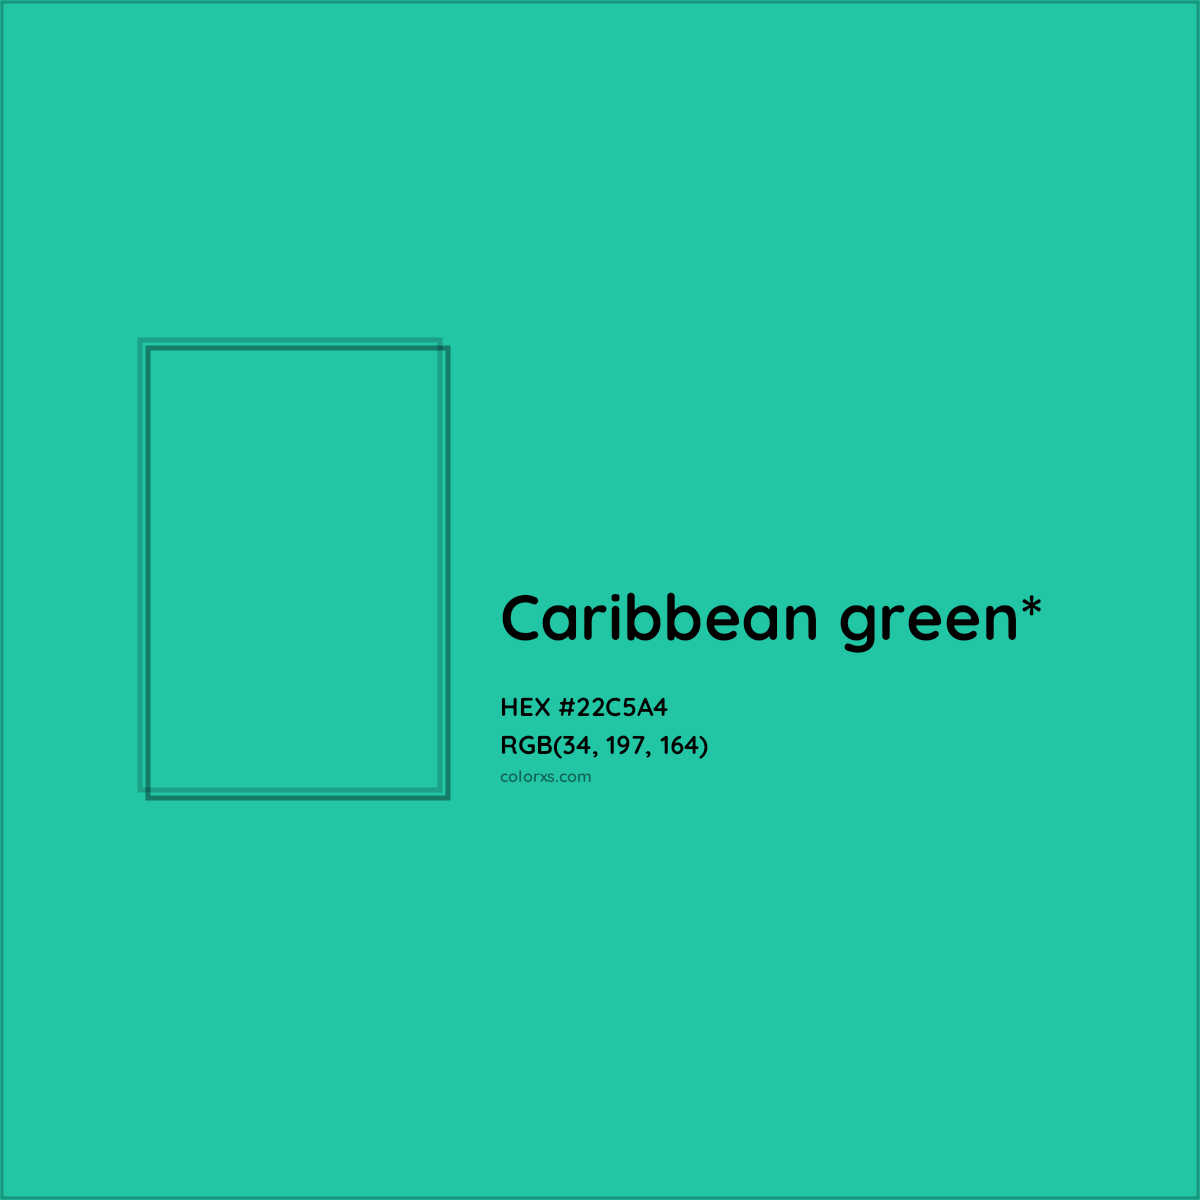 Pantone 15-5421 Tcx Aqua Green Color, Hex color Code #00B89F information, Hsl, Rgb